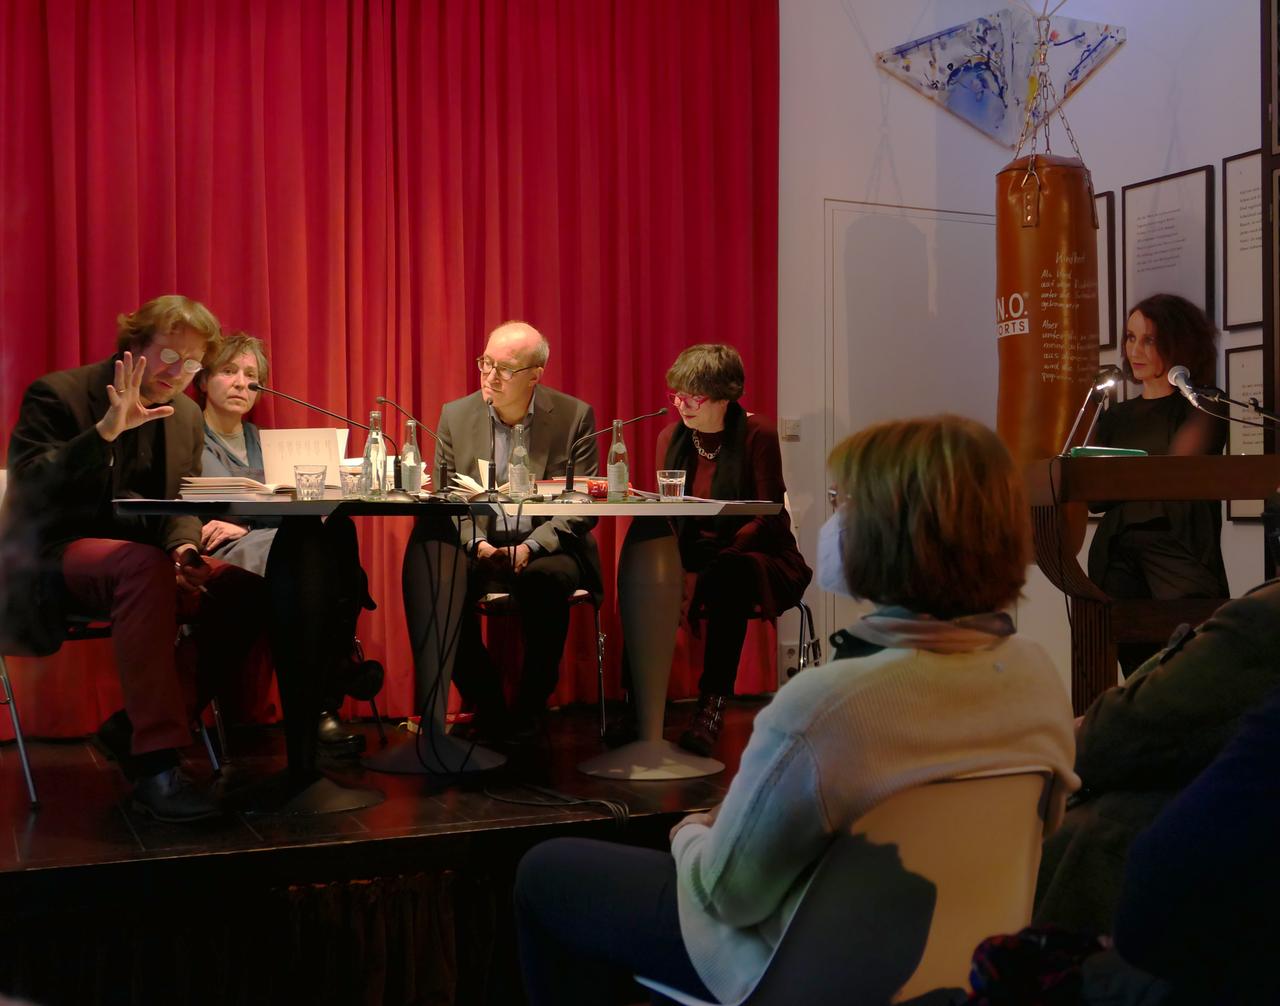 Auf einer Bühne sitzen Frieder von Ammon, Elke Schmitter, Jan Bürger und Barbara Wahlster gemeinsam am Tisch, rechts davon steht Birgitta Assheuer hinter einem Podium.